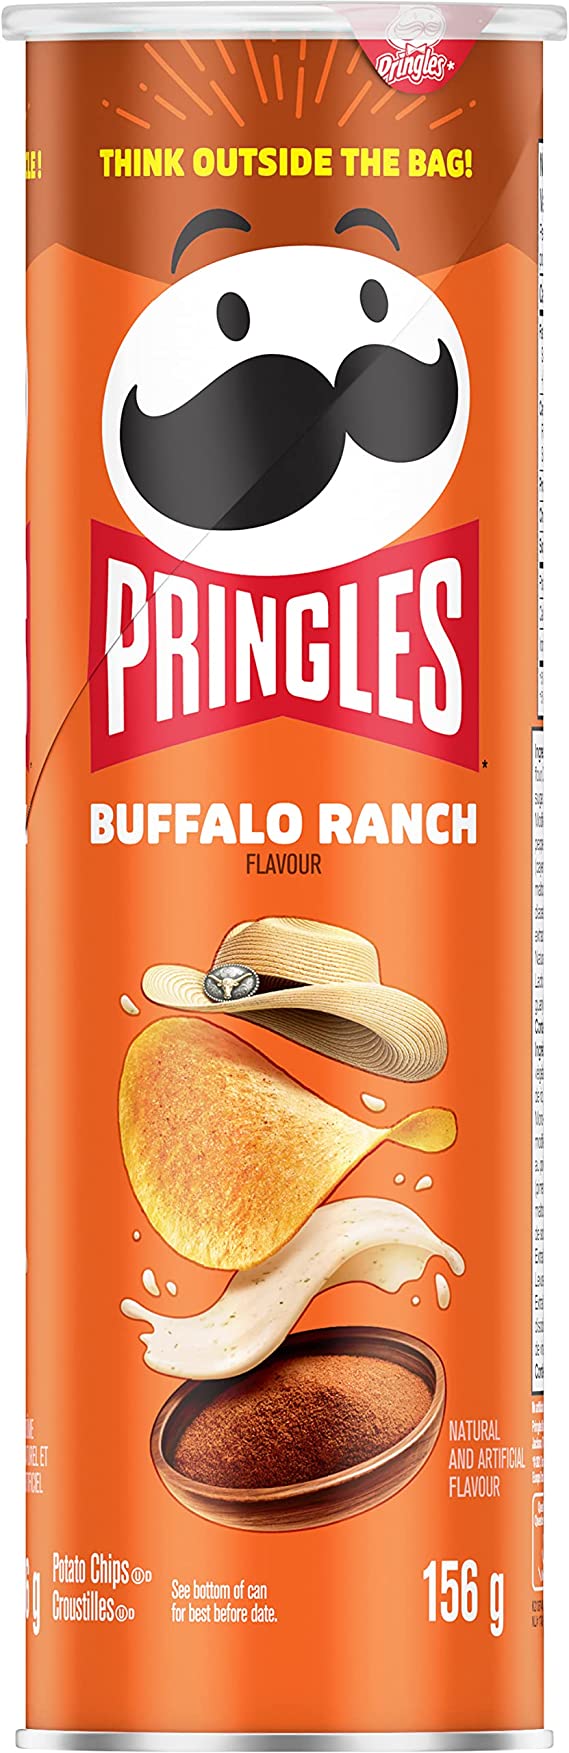 Pringles Buffalo Ranch Chips, 156g